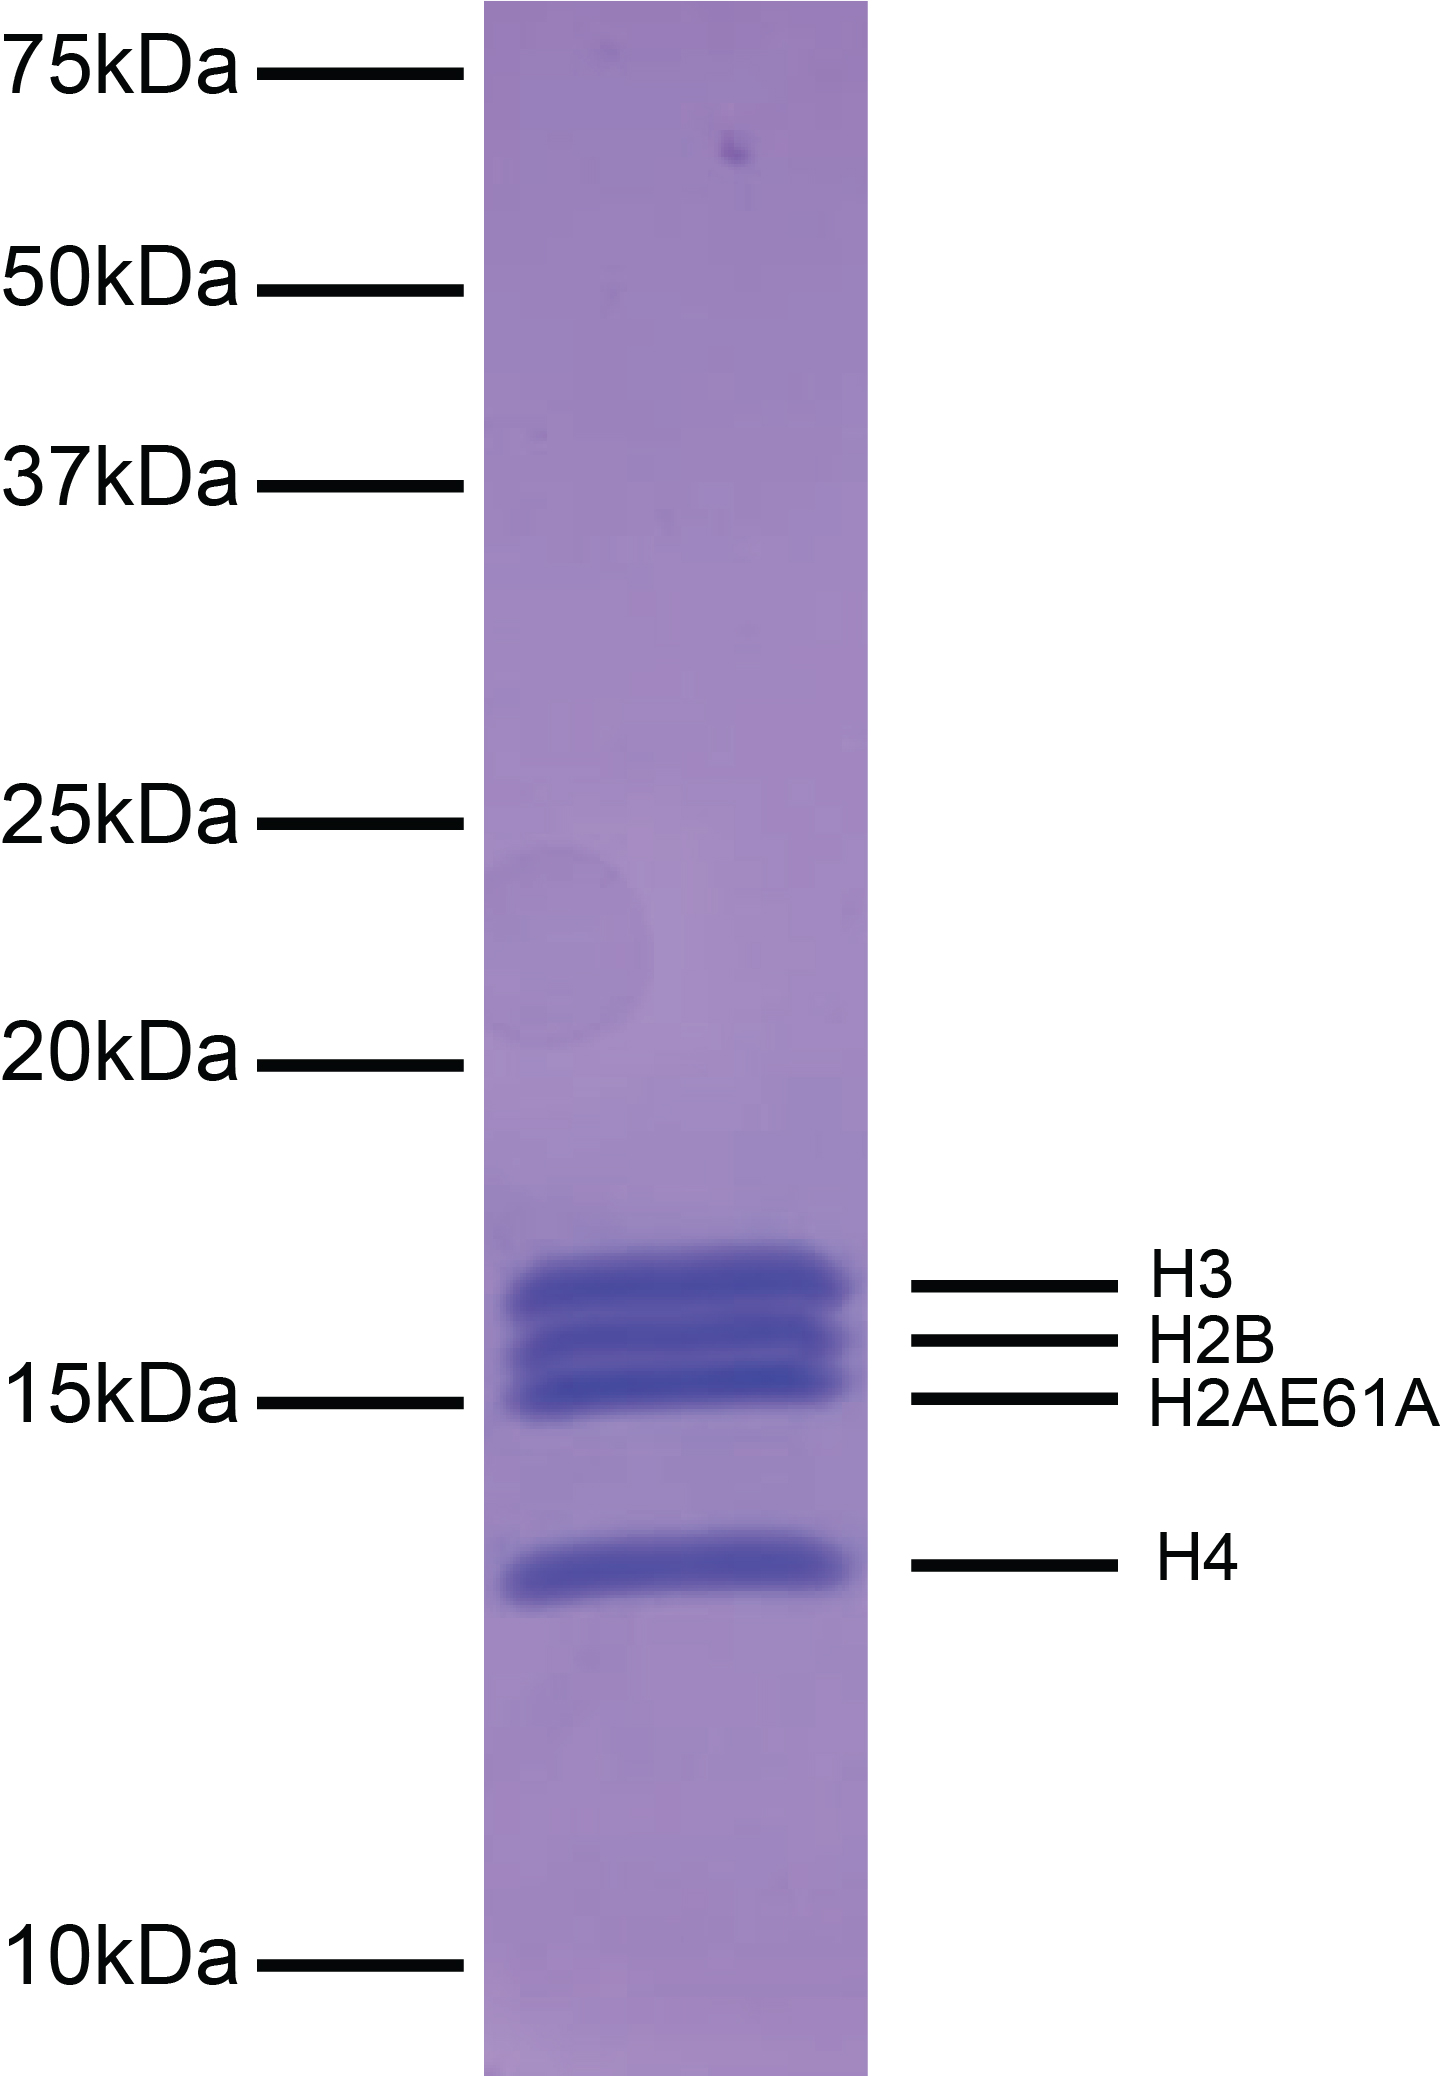 16-0029-protein-gel-data-test